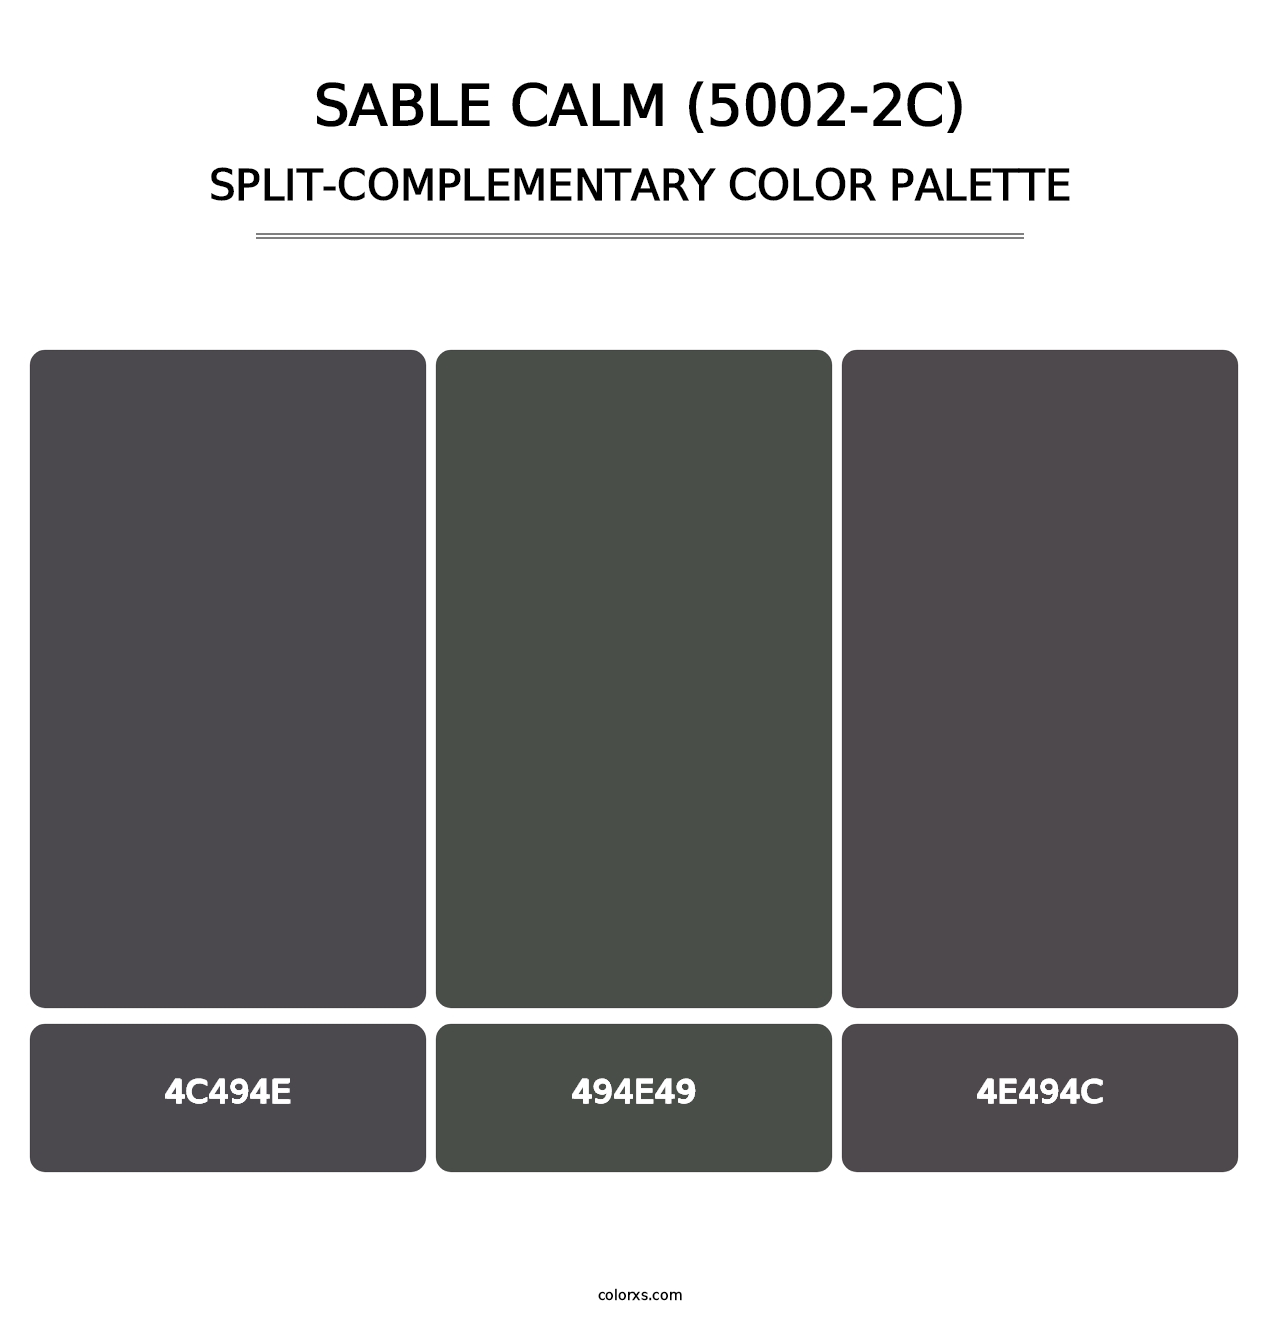 Sable Calm (5002-2C) - Split-Complementary Color Palette